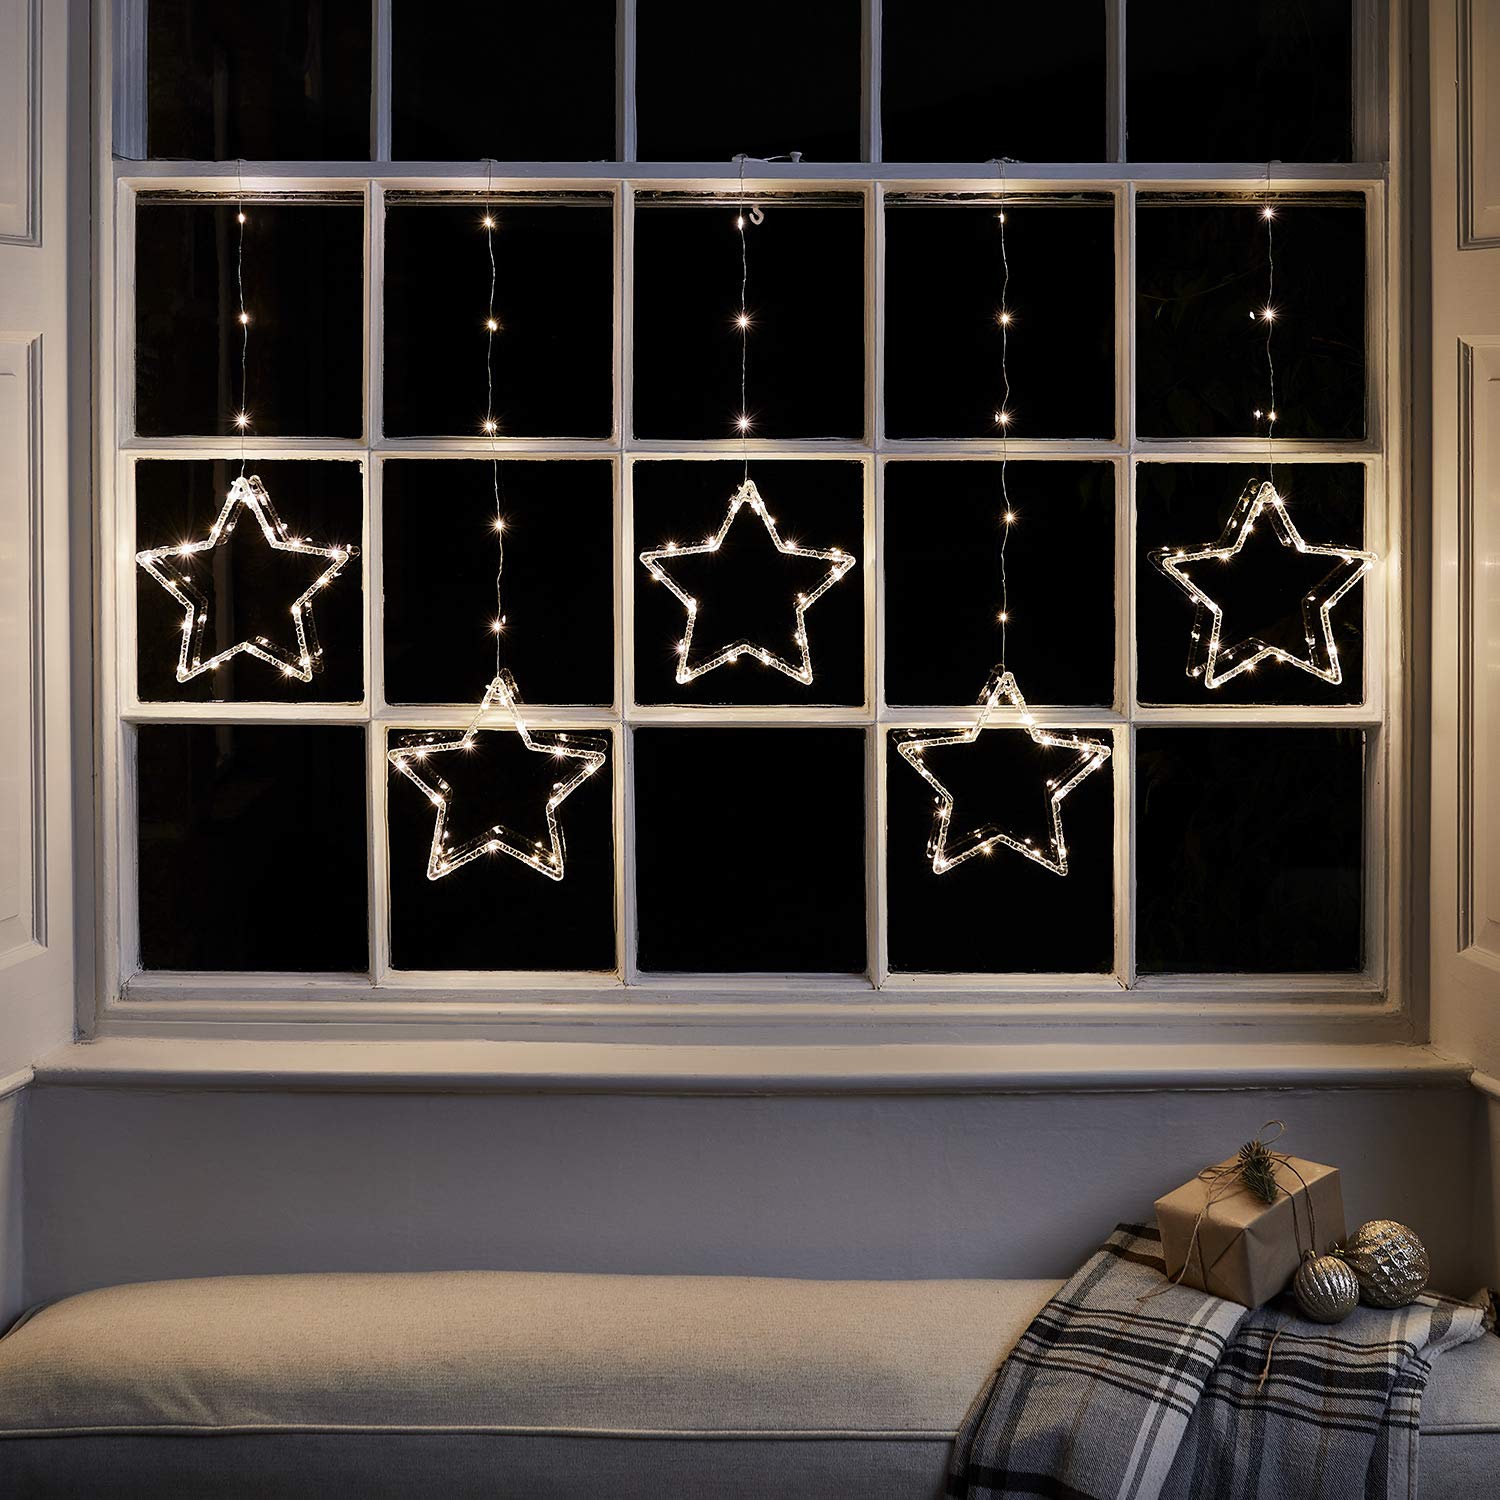 Lights4fun 2m 100er Micro LED Sternenvorhang warmweiß Weihnachtsbeleuchtung mit Timer Weihnachtsdeko Fenster